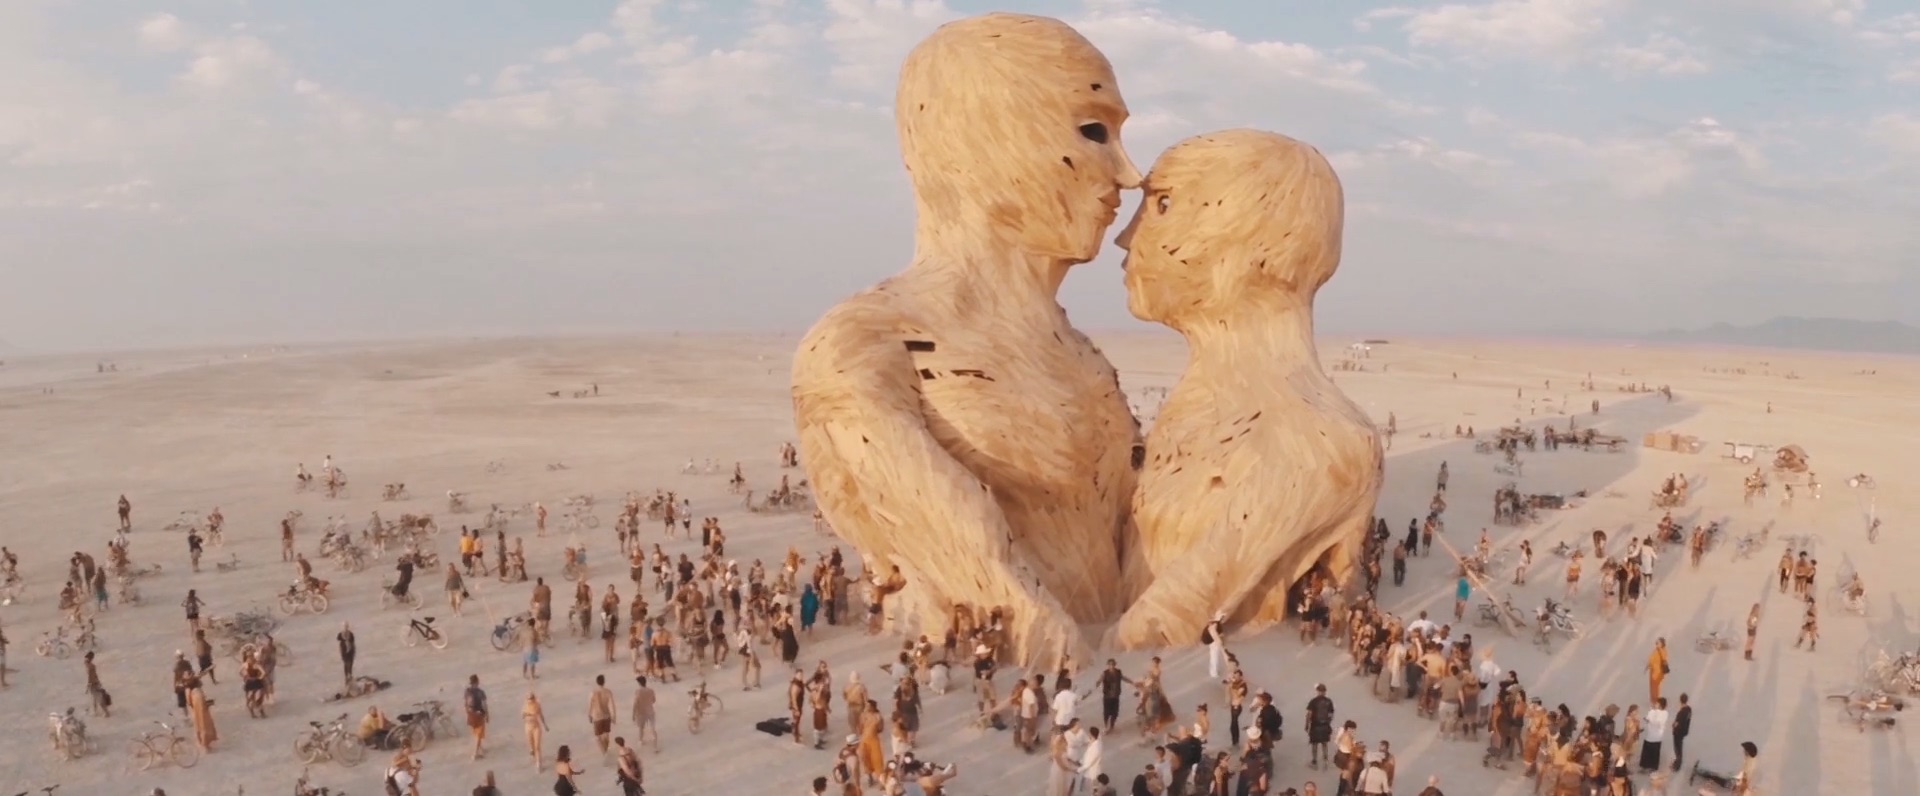 Art of Burning Man 2014_5